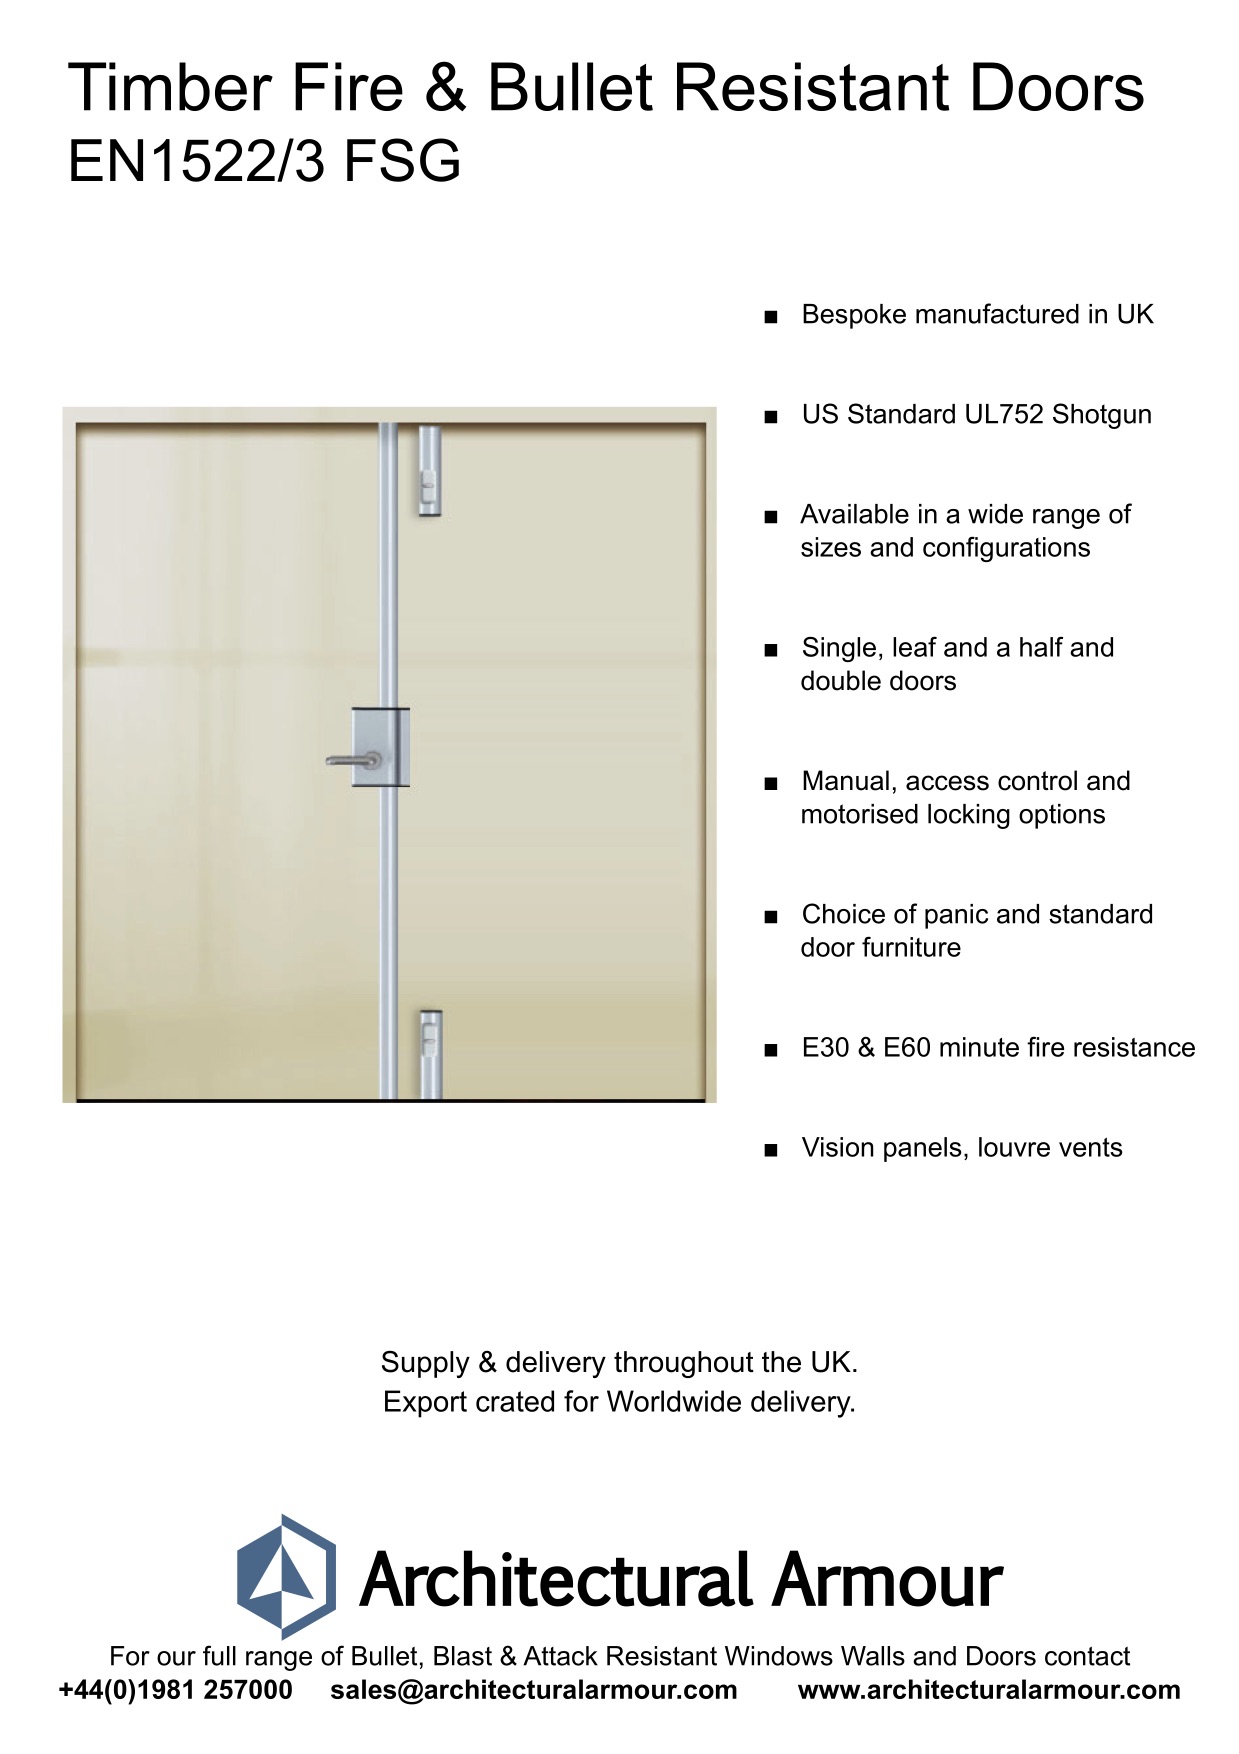 Fire-resistant-and-Bulletproof-Timber-Double-Doors-UK-EN1522-3-FSG